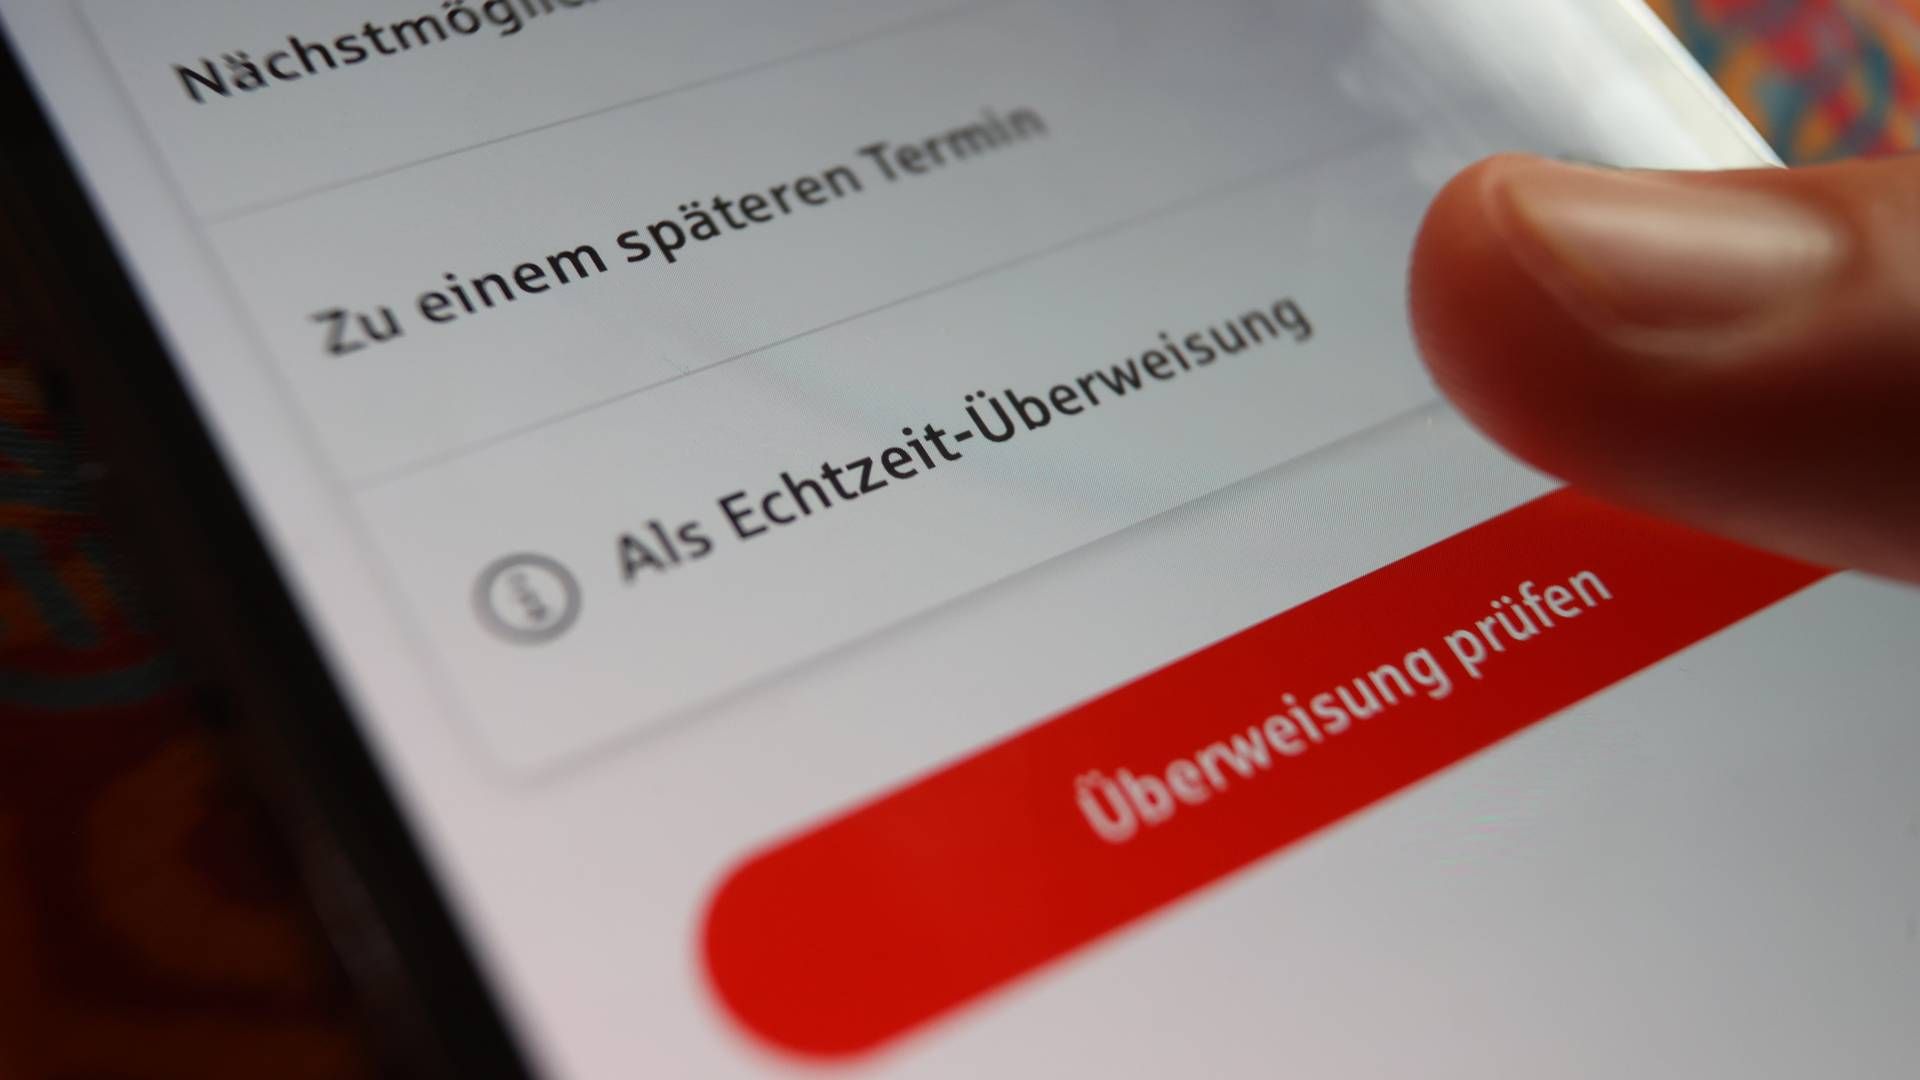 Die Option "Als Echtzeit-Überweisung" in einer Banking-App. | Foto: picture alliance/dpa | Karl-Josef Hildenbrand